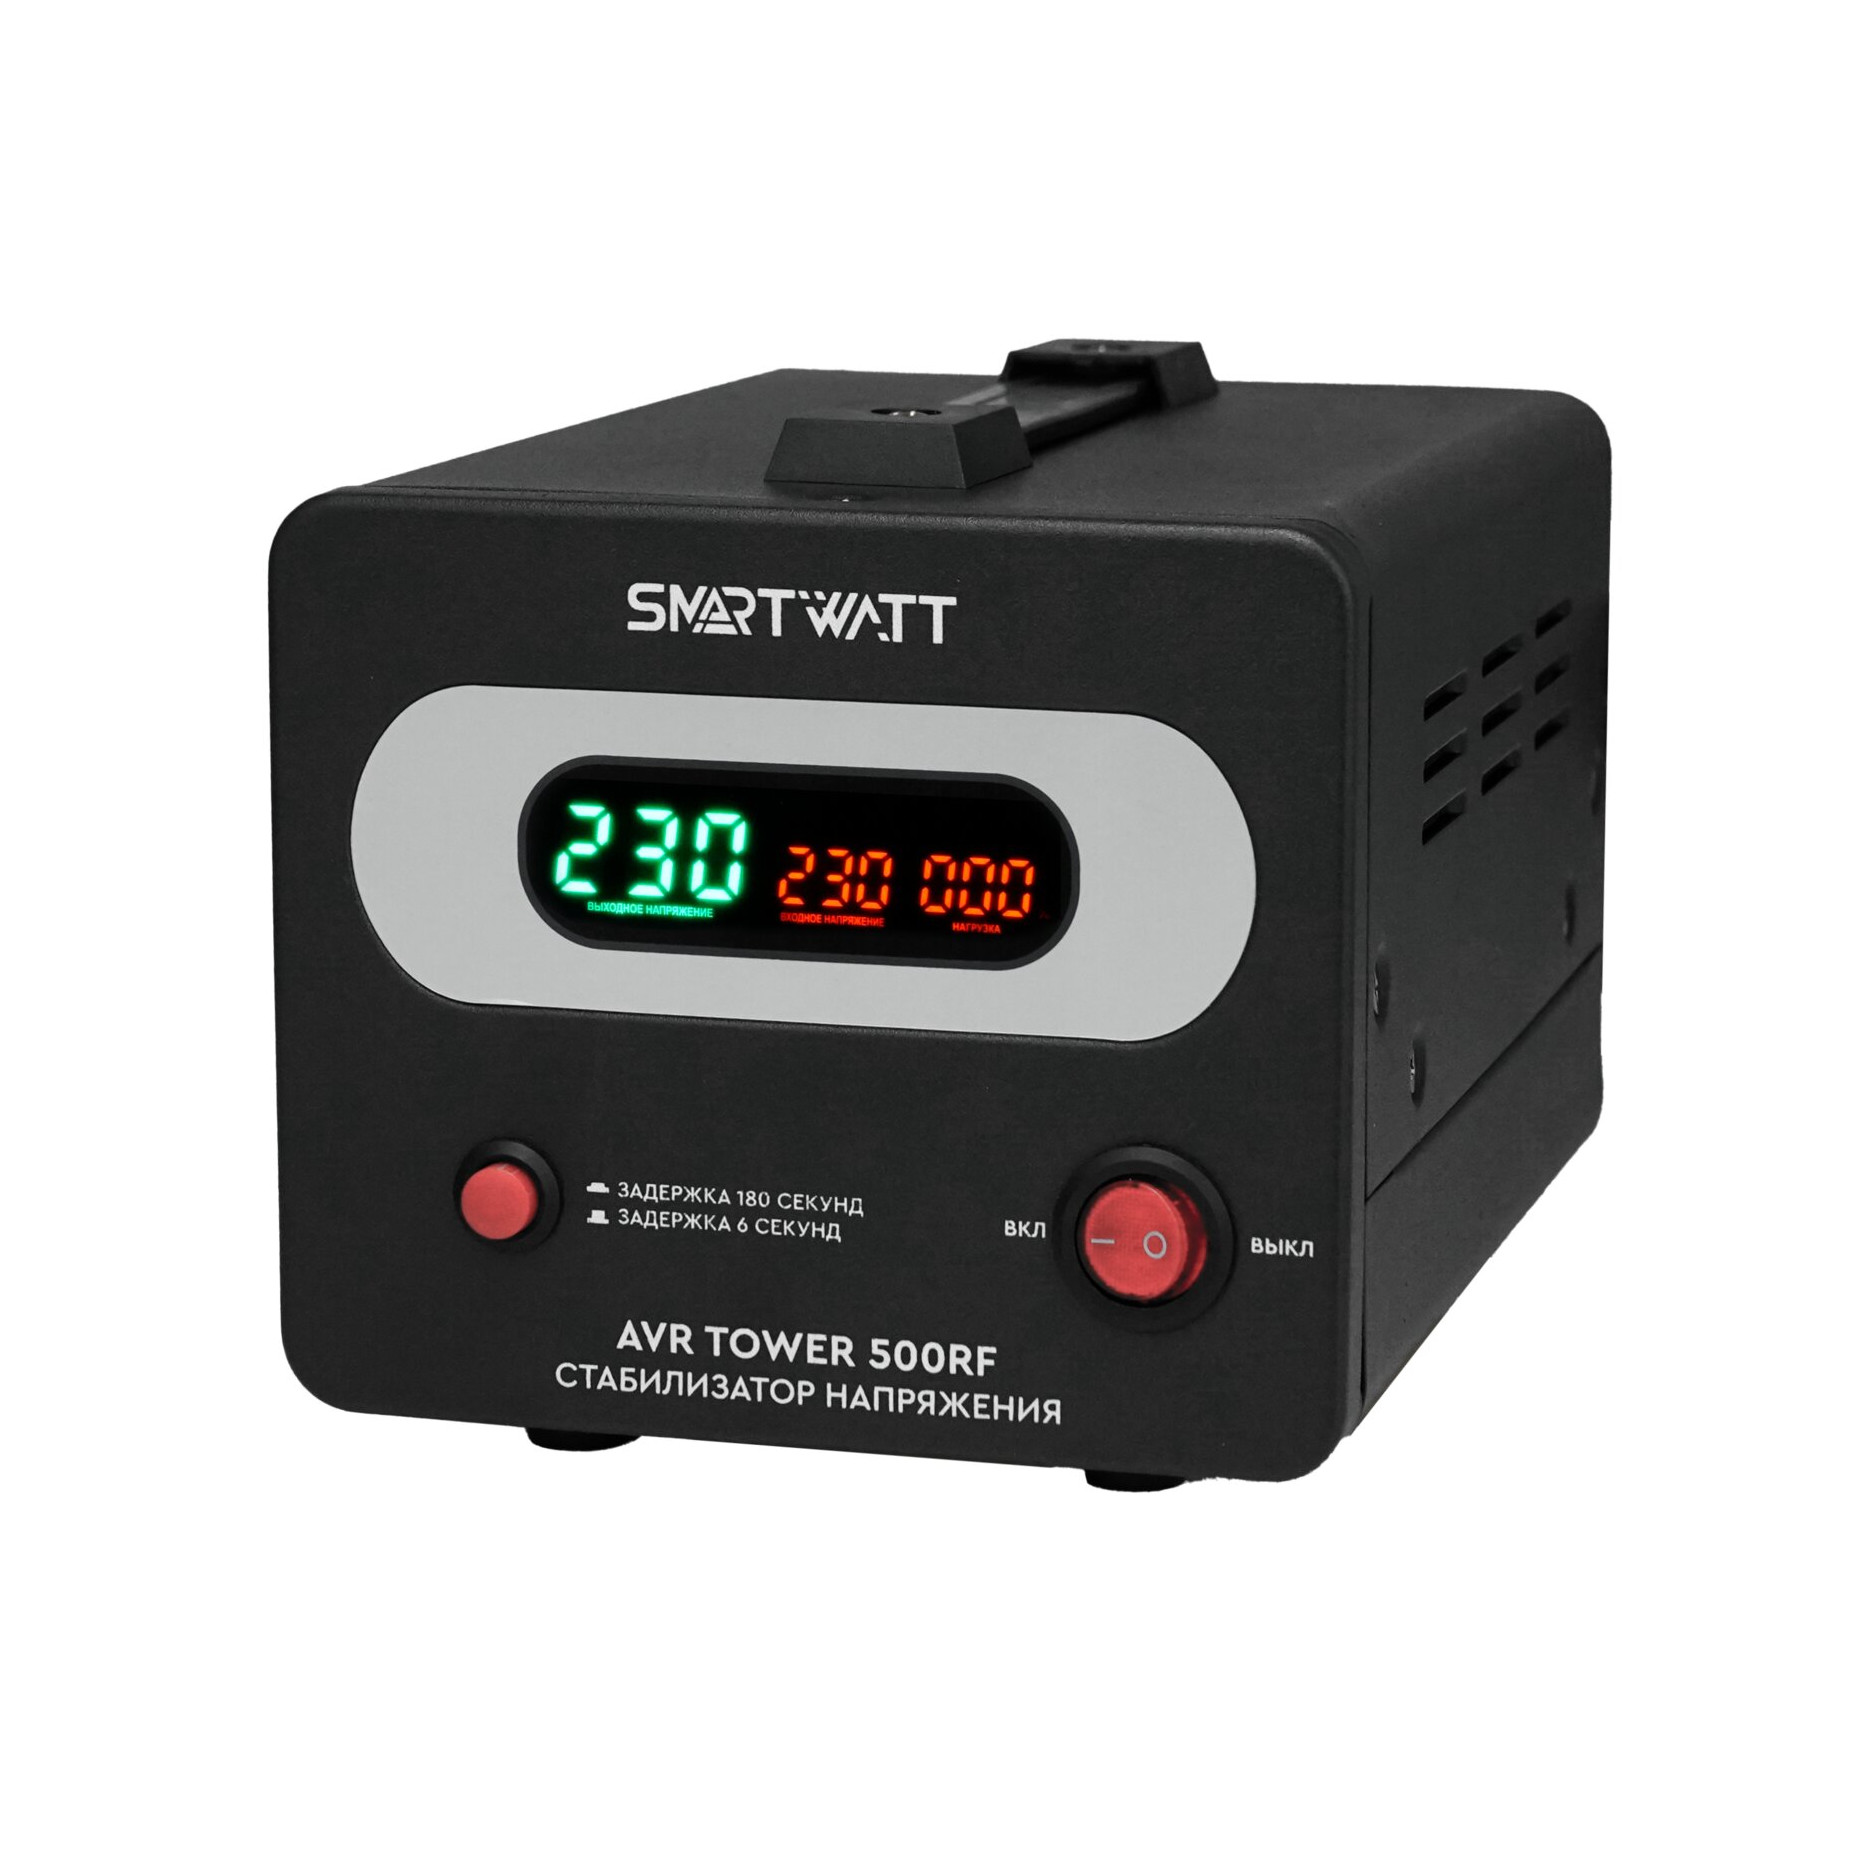 Стабилизатор напряжения SMARTWATT AVR TOWER 500RF, 500 VA, клеммная колодка, черный (4512020370006) - фото 1